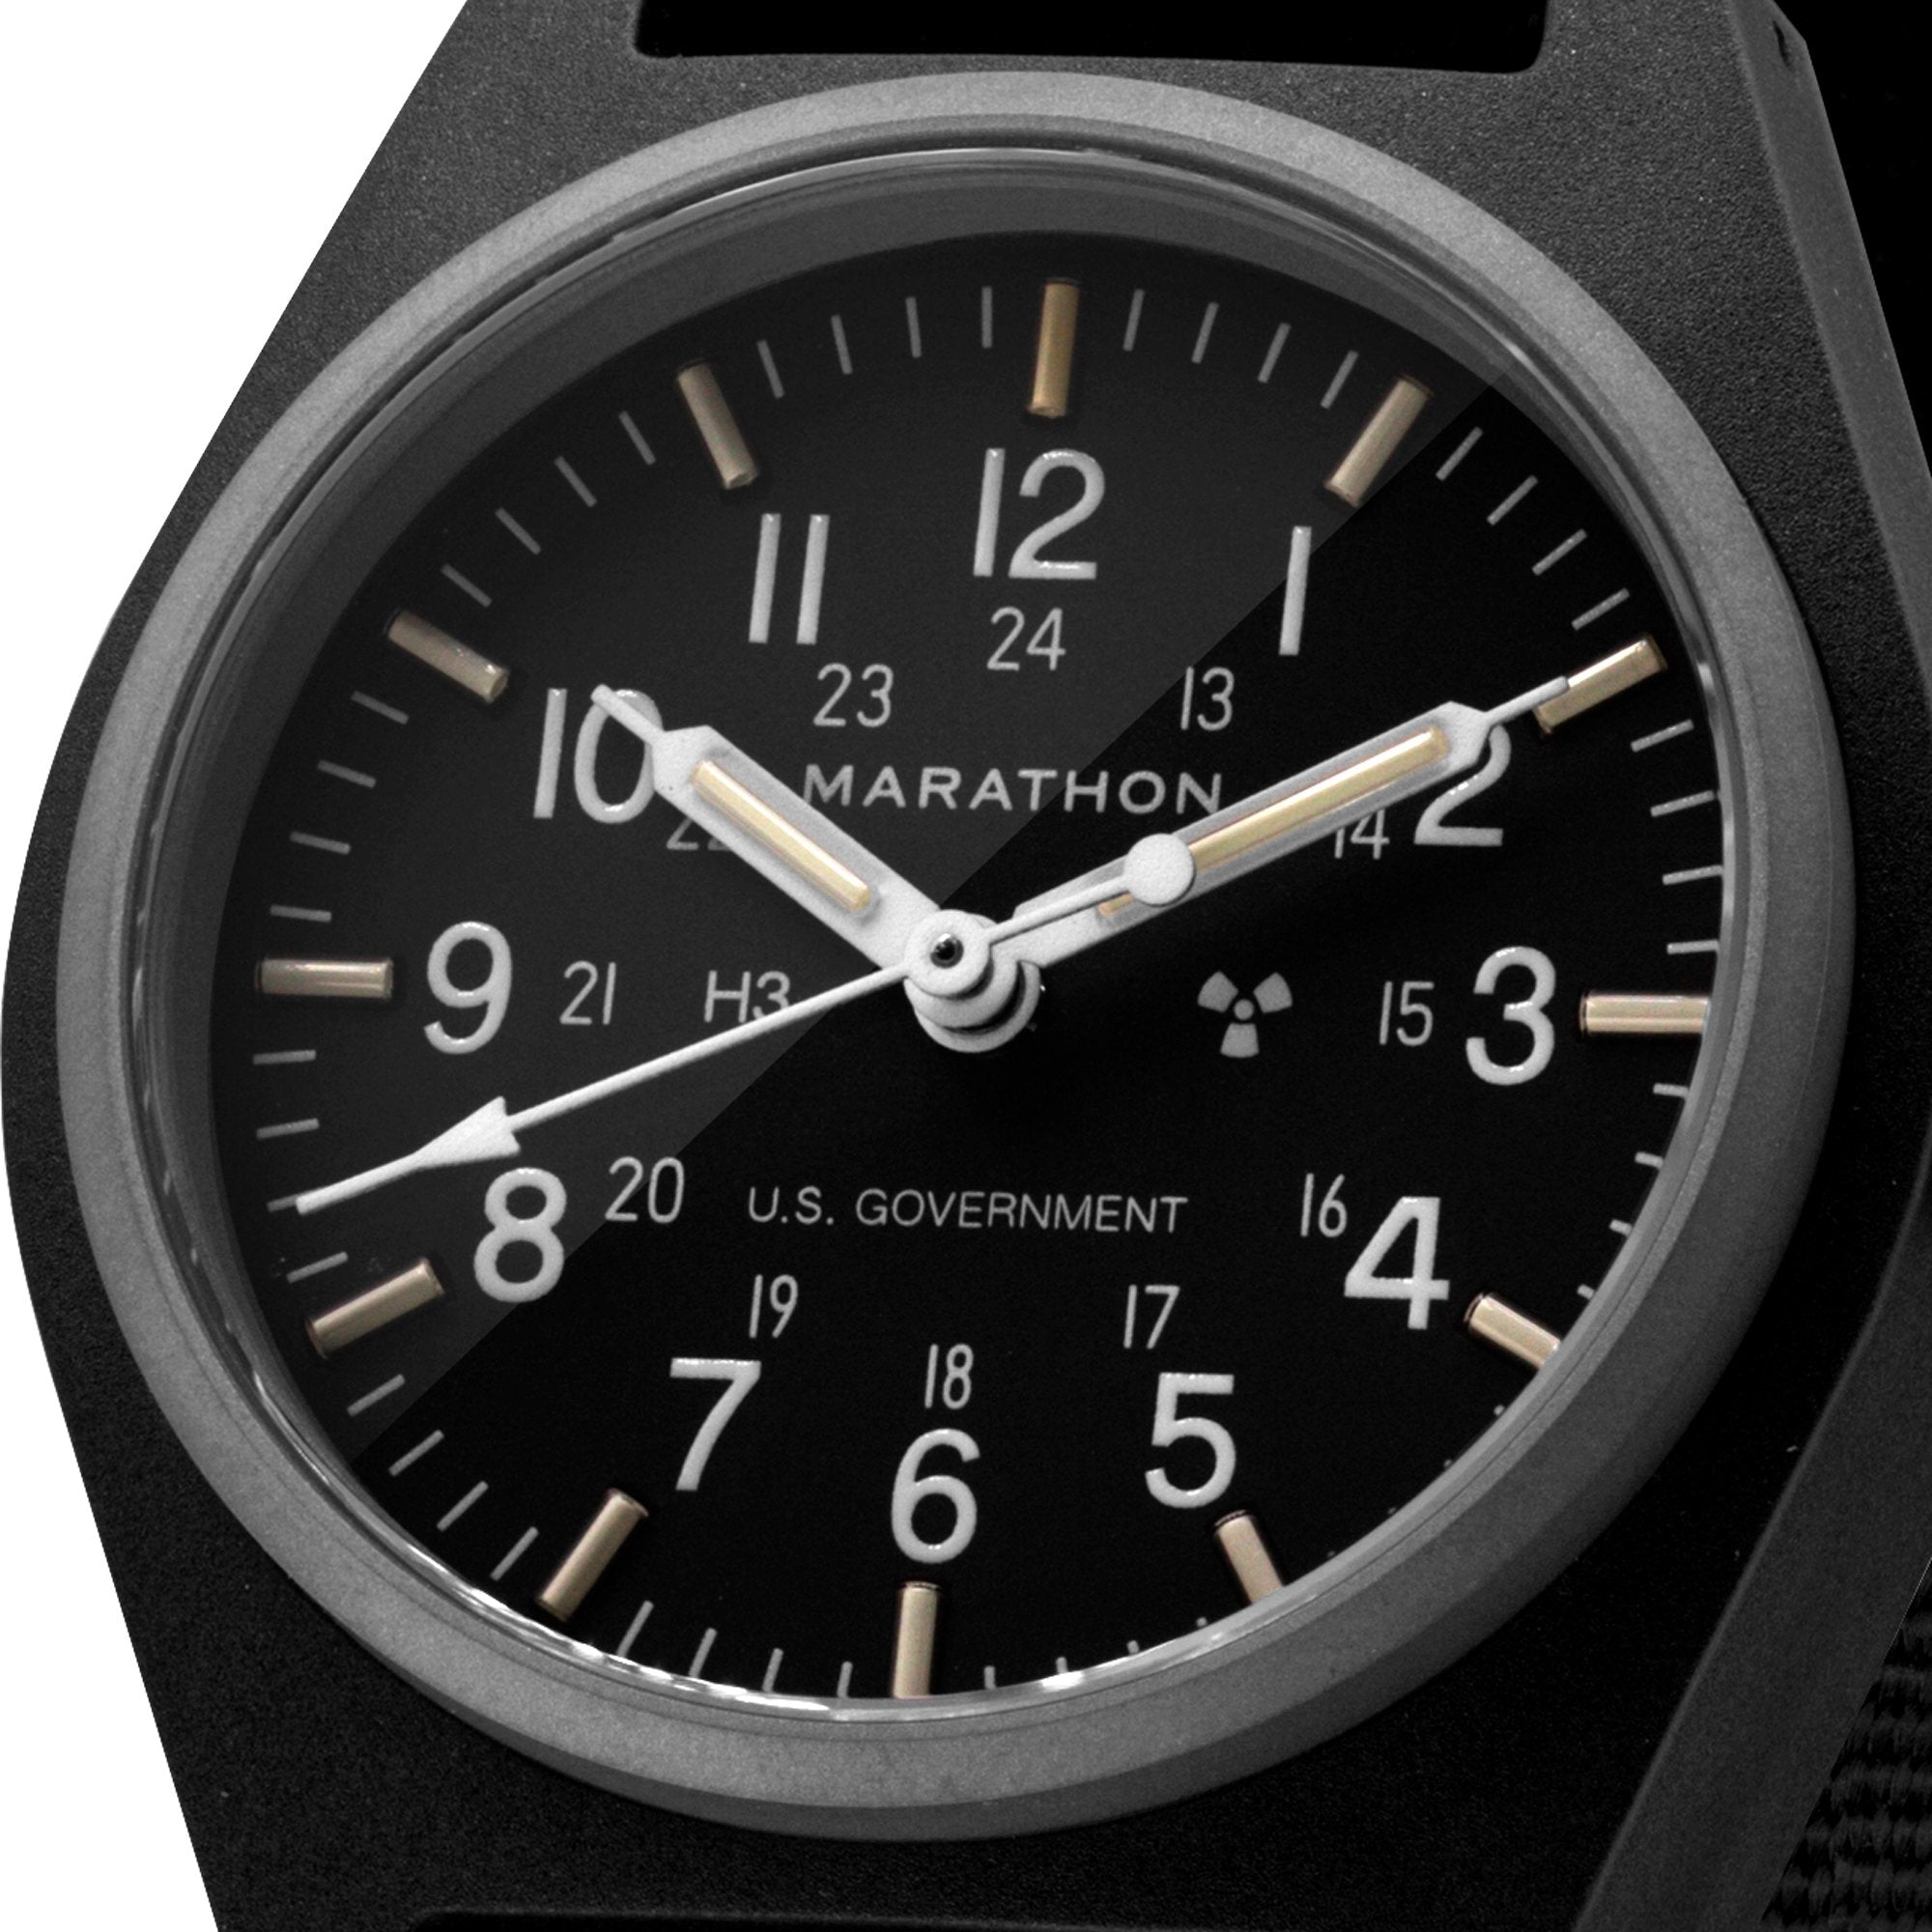 Czarny zegarek mechaniczny ogólnego przeznaczenia (GPM) z oznaczeniami rządu USA – 34 mm – zegarek maratoński